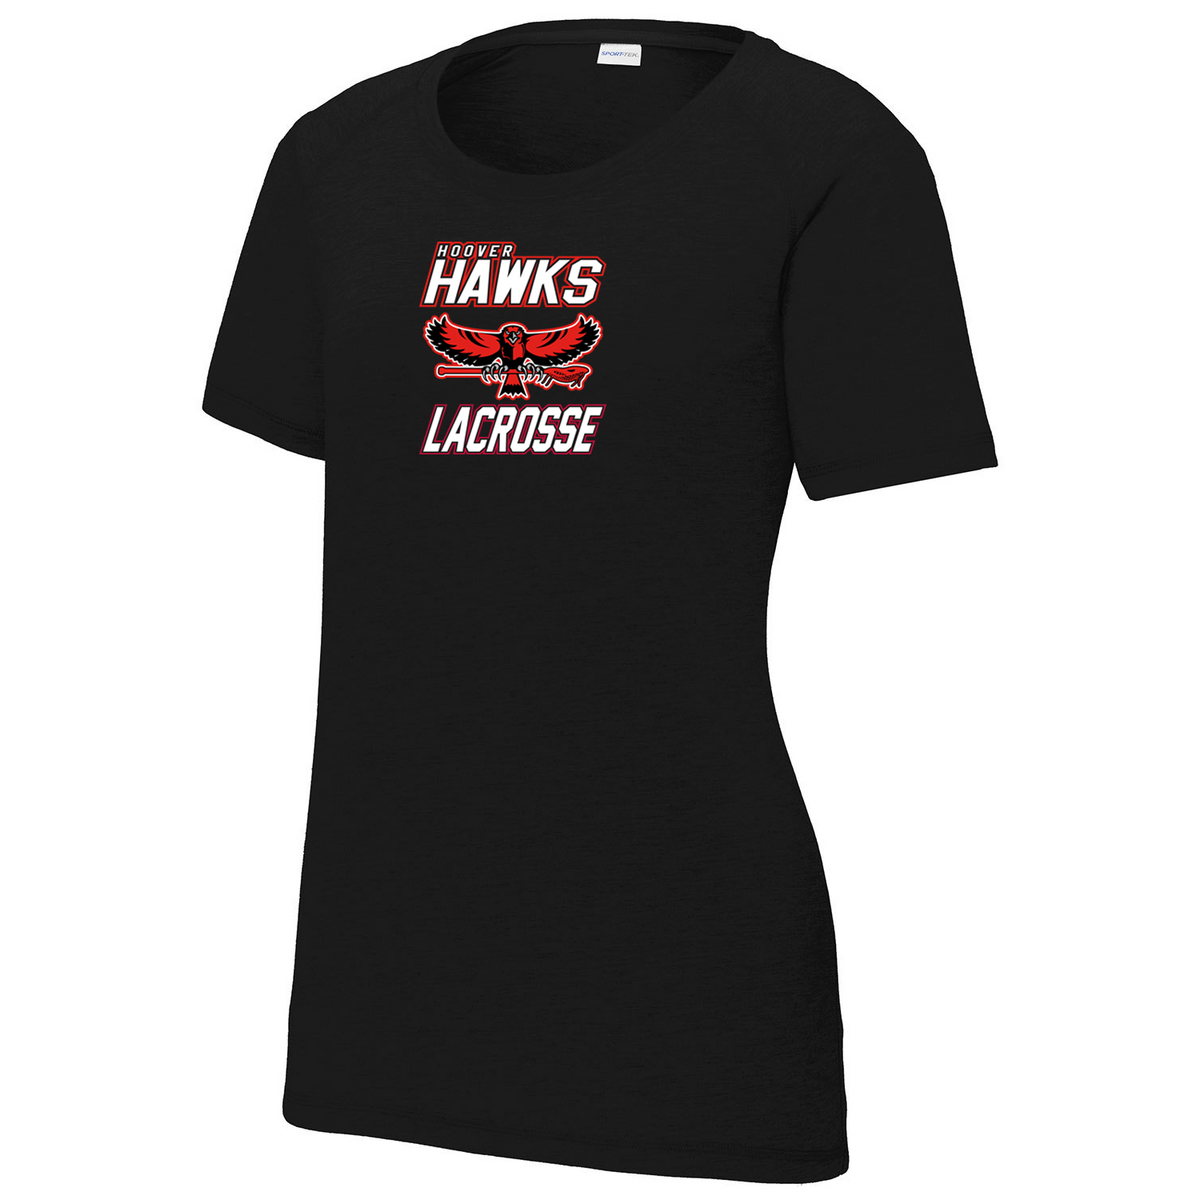 Hawks Lacrosse Women's Raglan CottonTouch